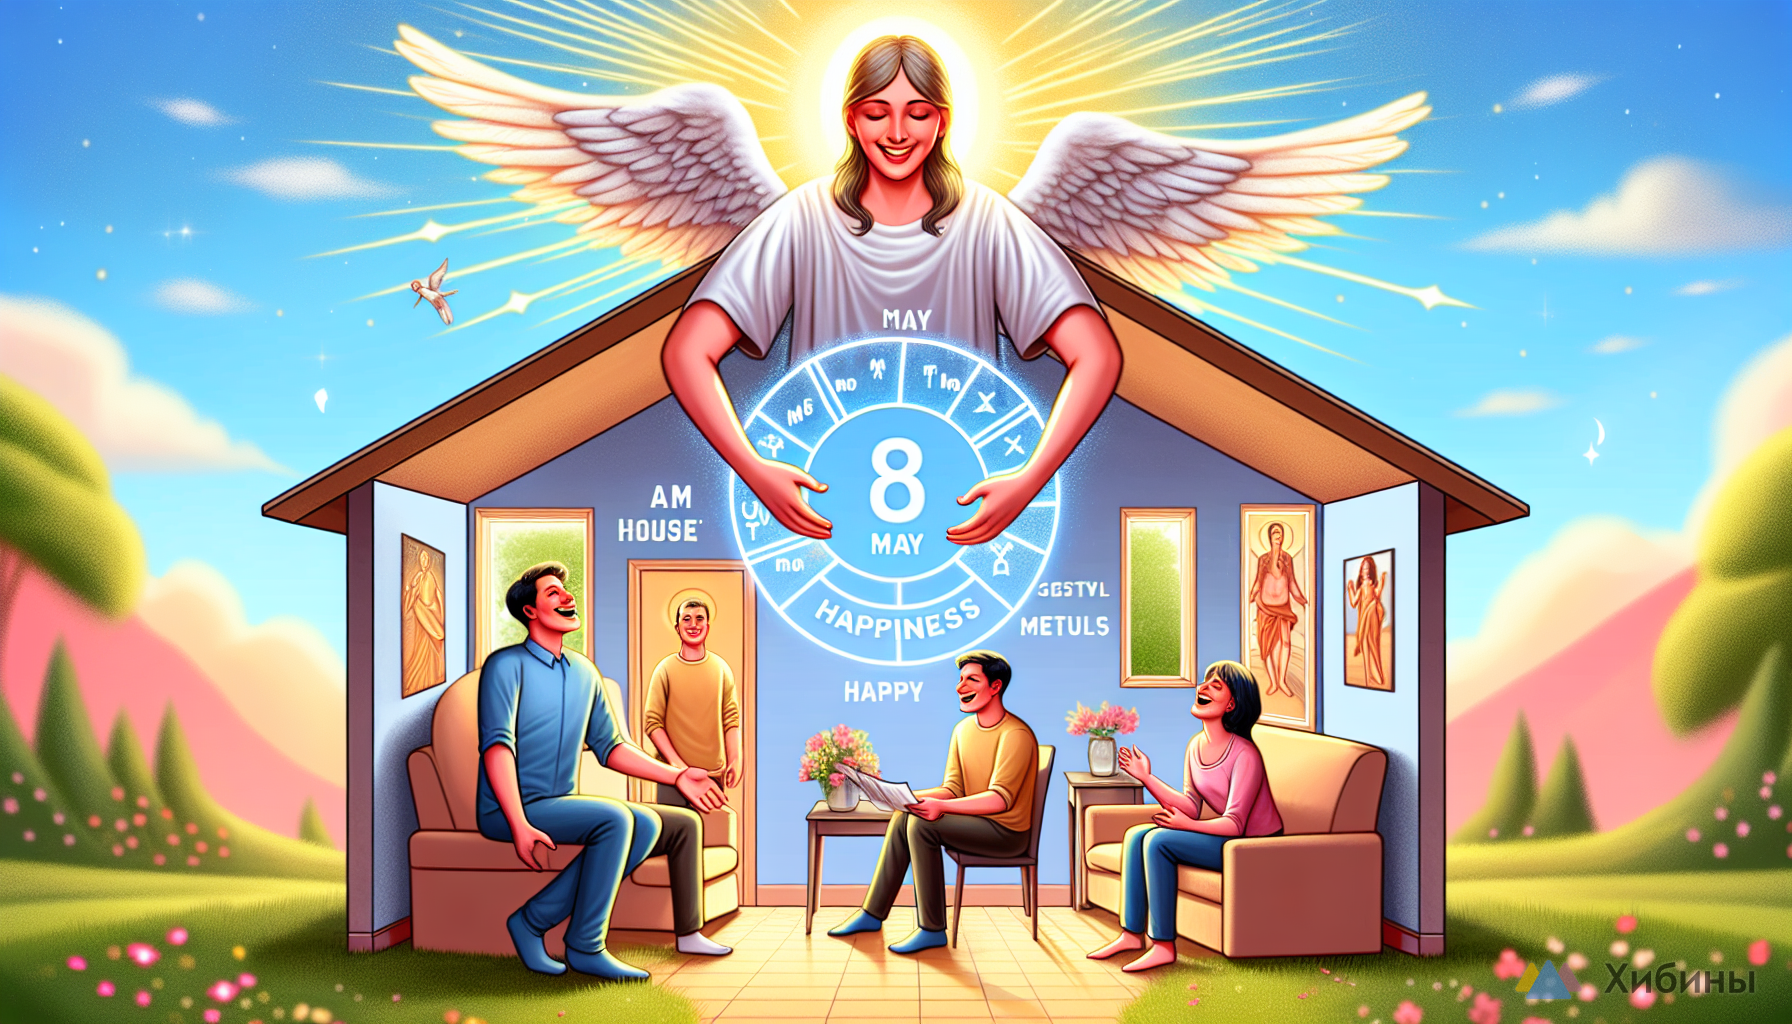 Счастье войдёт в ваш дом: Ангел-хранитель возьмет за руку с 8 мая — порадует несказанно 3 знака Зодиака